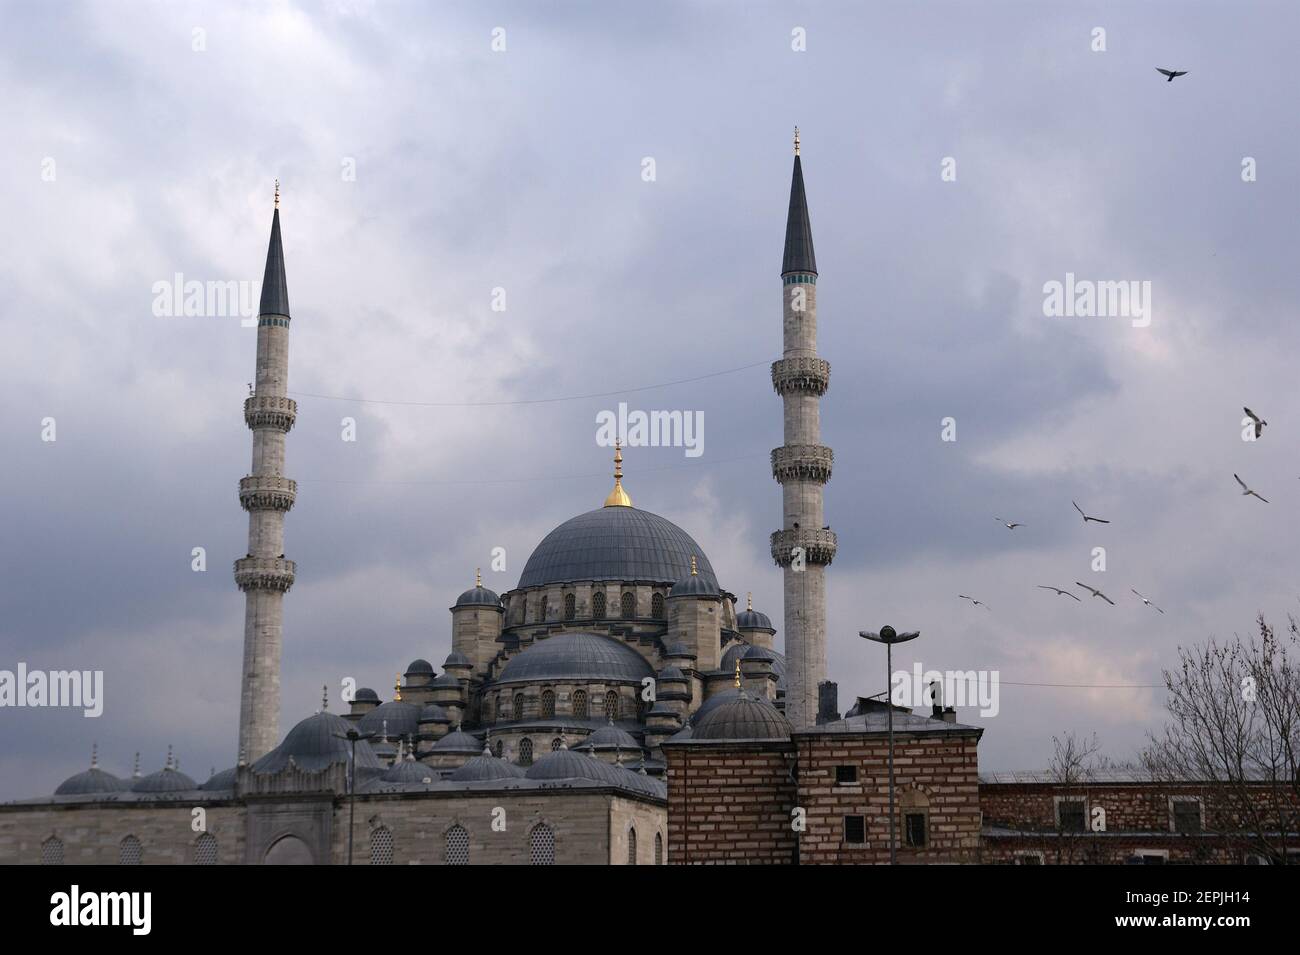 La Moschea del Sultano Ahmed è una moschea storica di Istanbul, la più grande città della Turchia e la capitale dell'Impero Ottomano (dal 1453 al 1923). Il Foto Stock